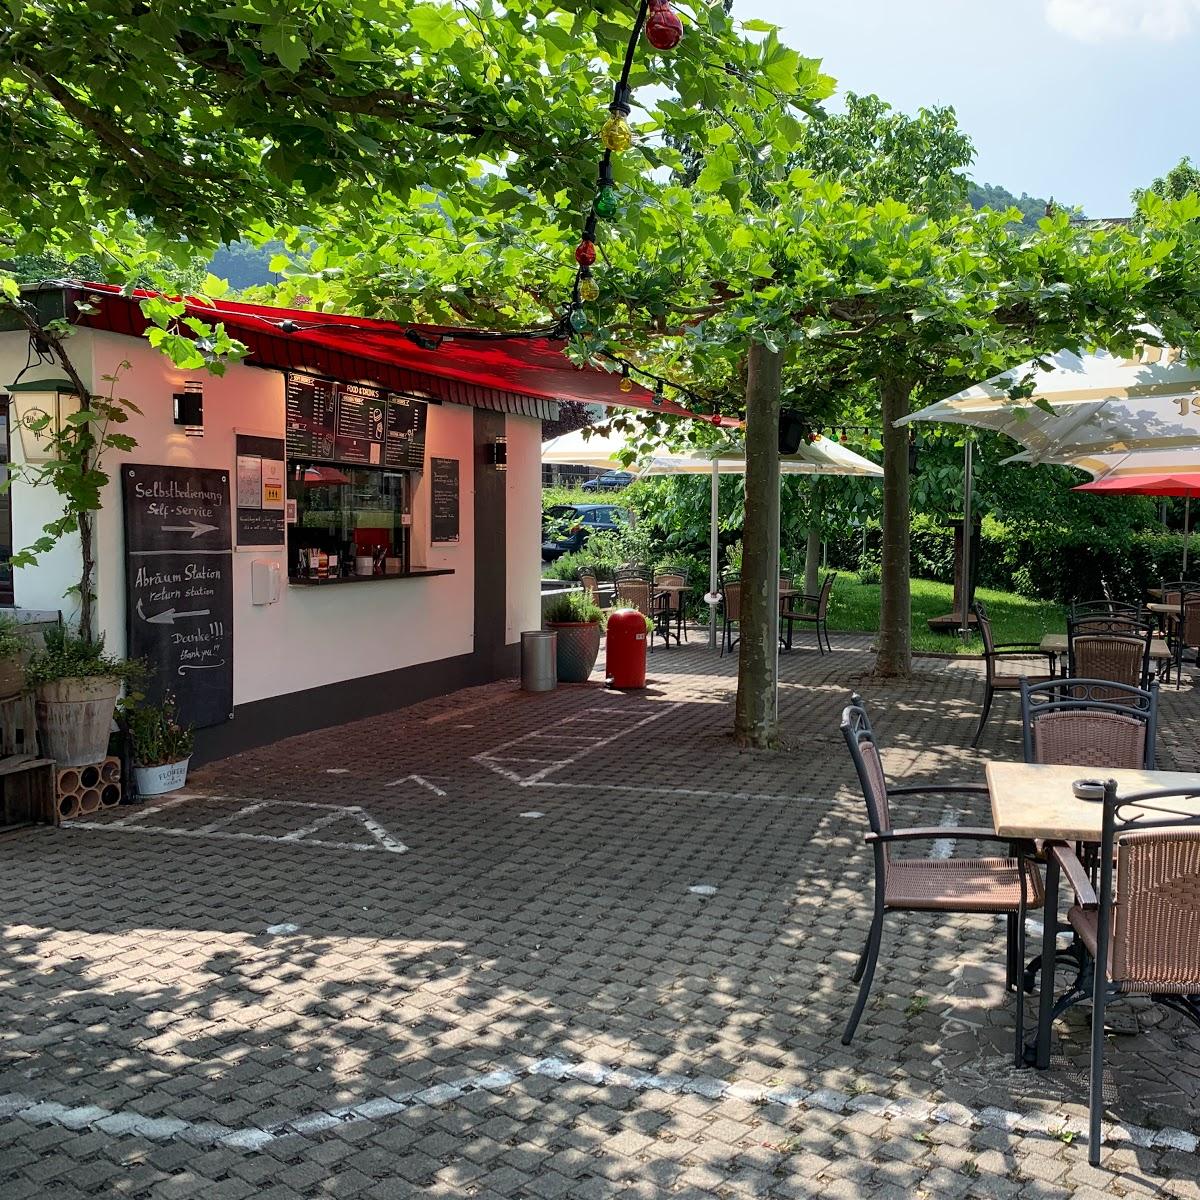 Restaurant "STUMBERGERS CURRY Weinterrasse-Grill-Biergarten-Cafe" in Cochem